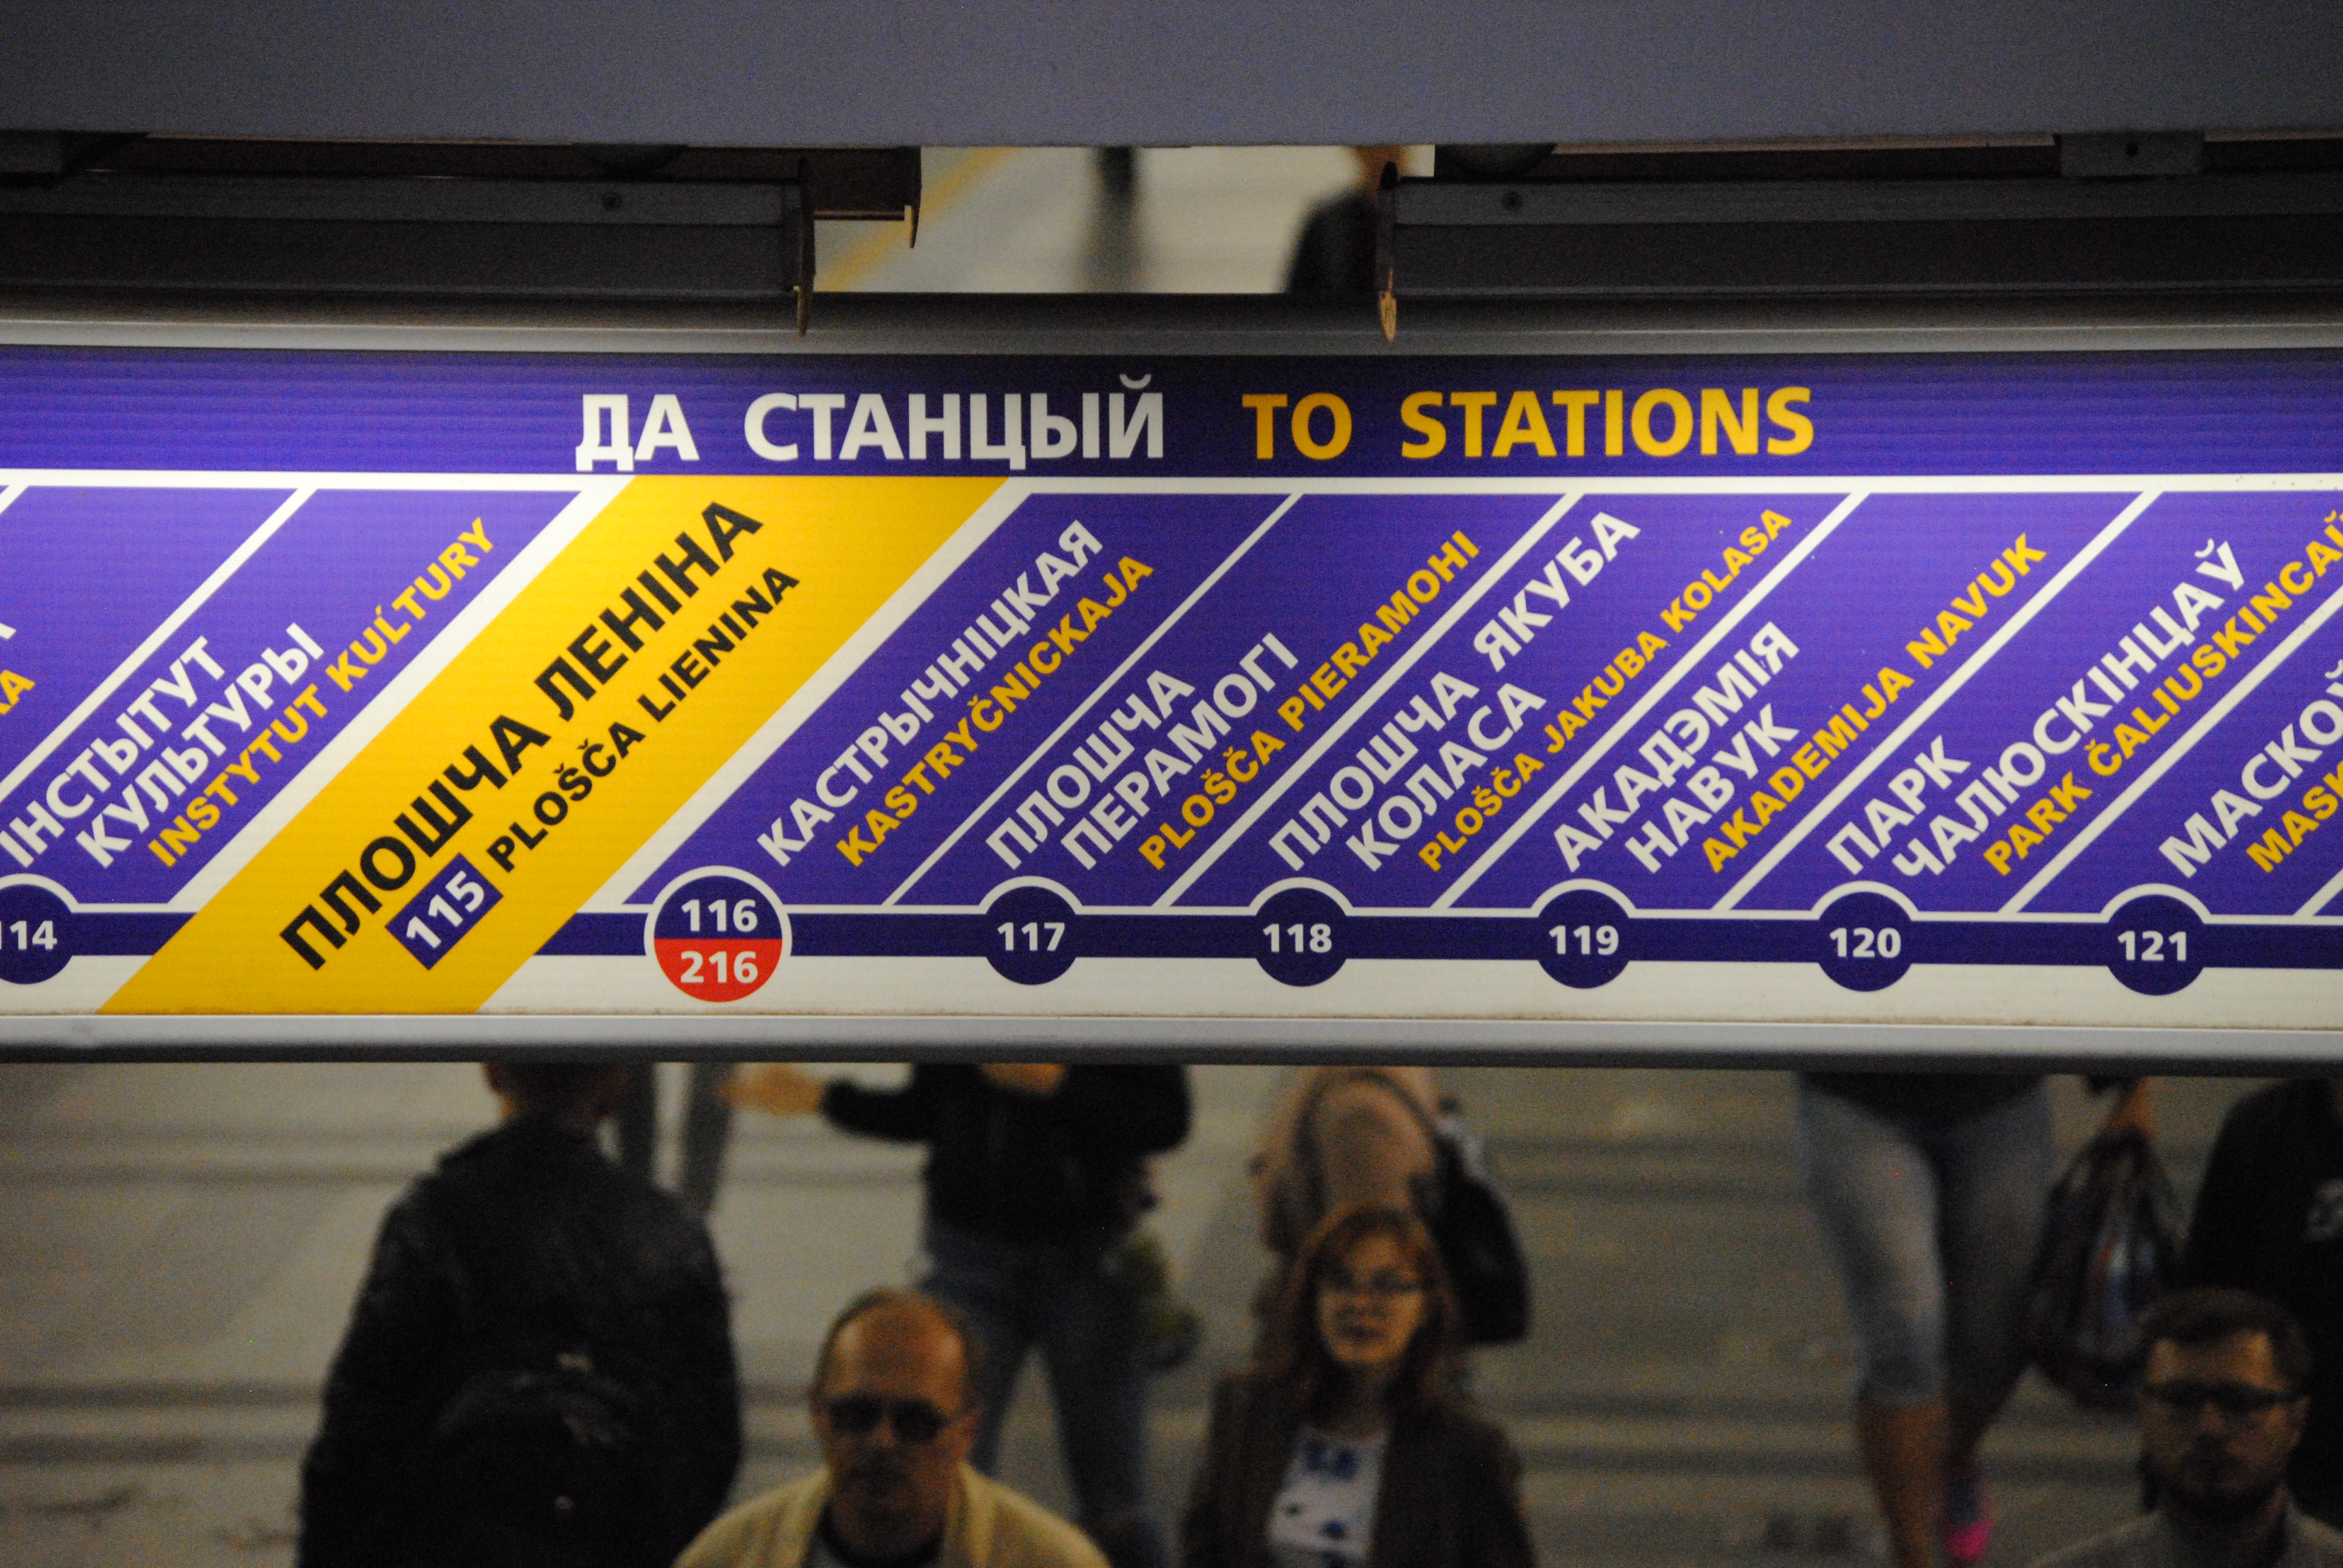 señalización en bielorruso del metro de Minsk